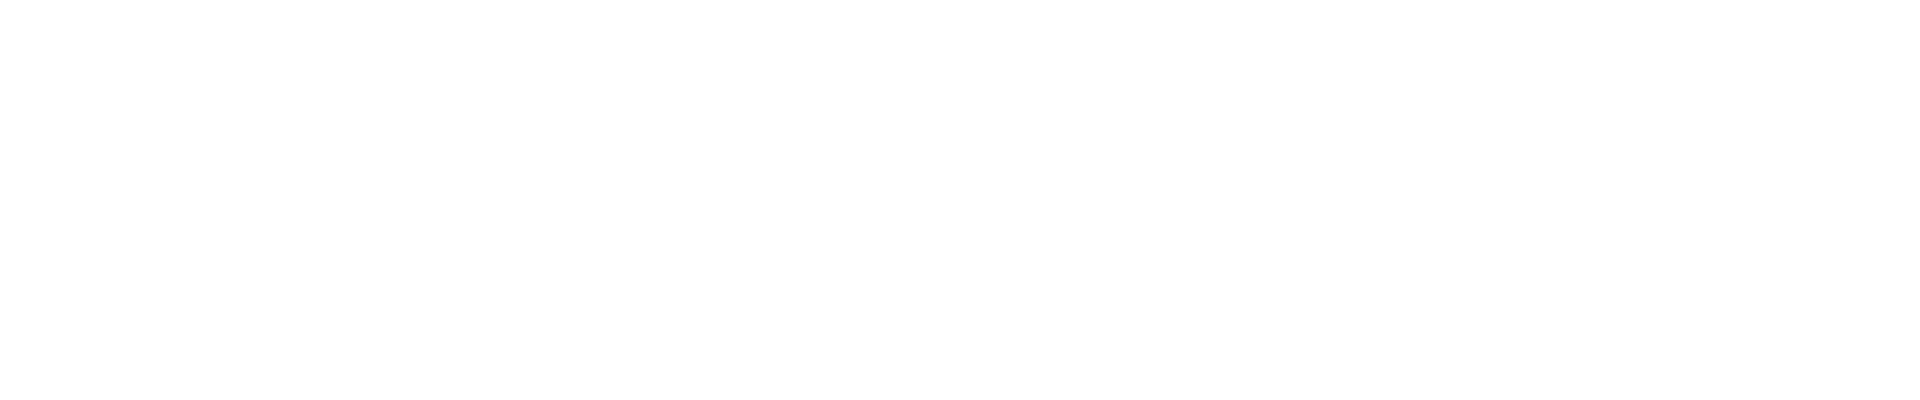 Your Last Seconds Last the Longest